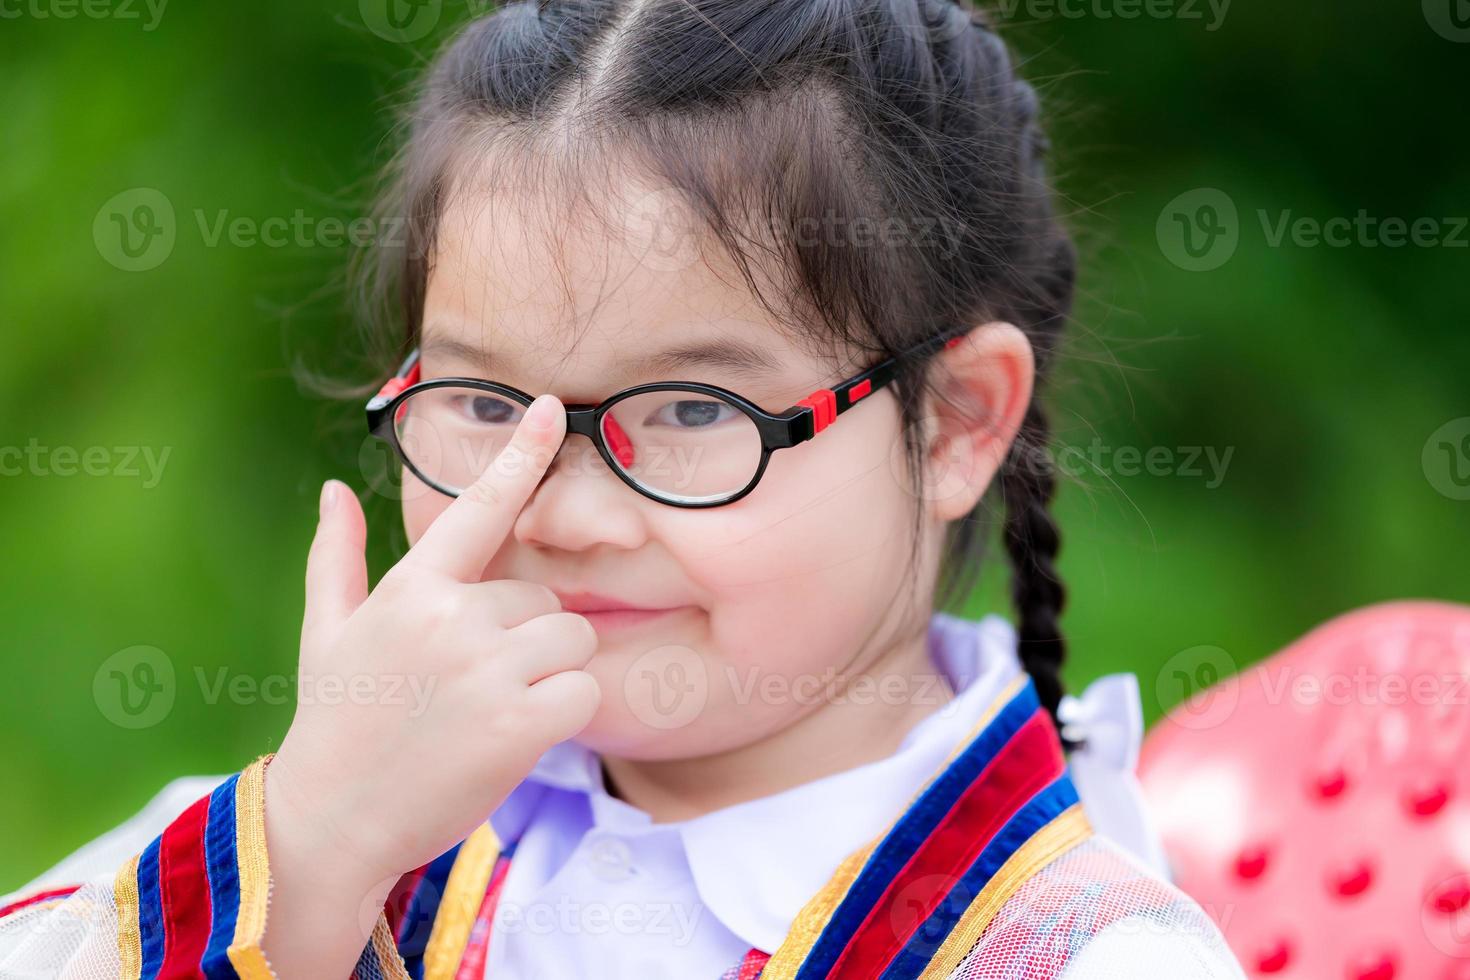 huvudbild av söta barn bär glasögon på grund av närsynthet eller lätt astigmatism. skolbarn använder sitt pekfinger för att trycka glasögonen så att de passar ögonhöjd eller dra åt. barn flicka är 6 år. foto